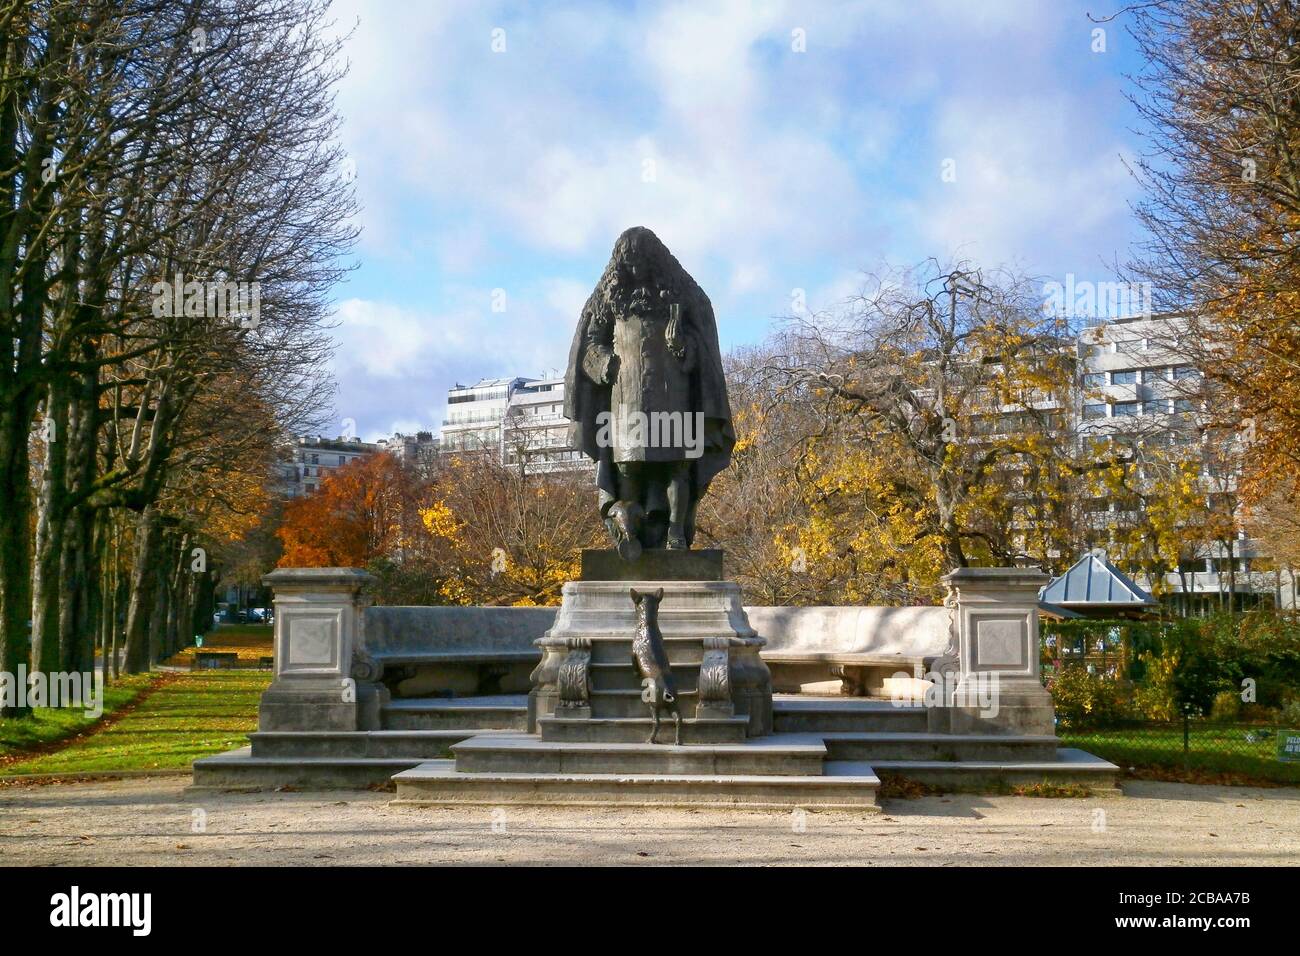 Paris, France - November 23 2017: Bronze statue entitled 'Hommage à Jean de la Fontaine' (Tribute to Jean de la Fontaine) representing the fabulist wi Stock Photo